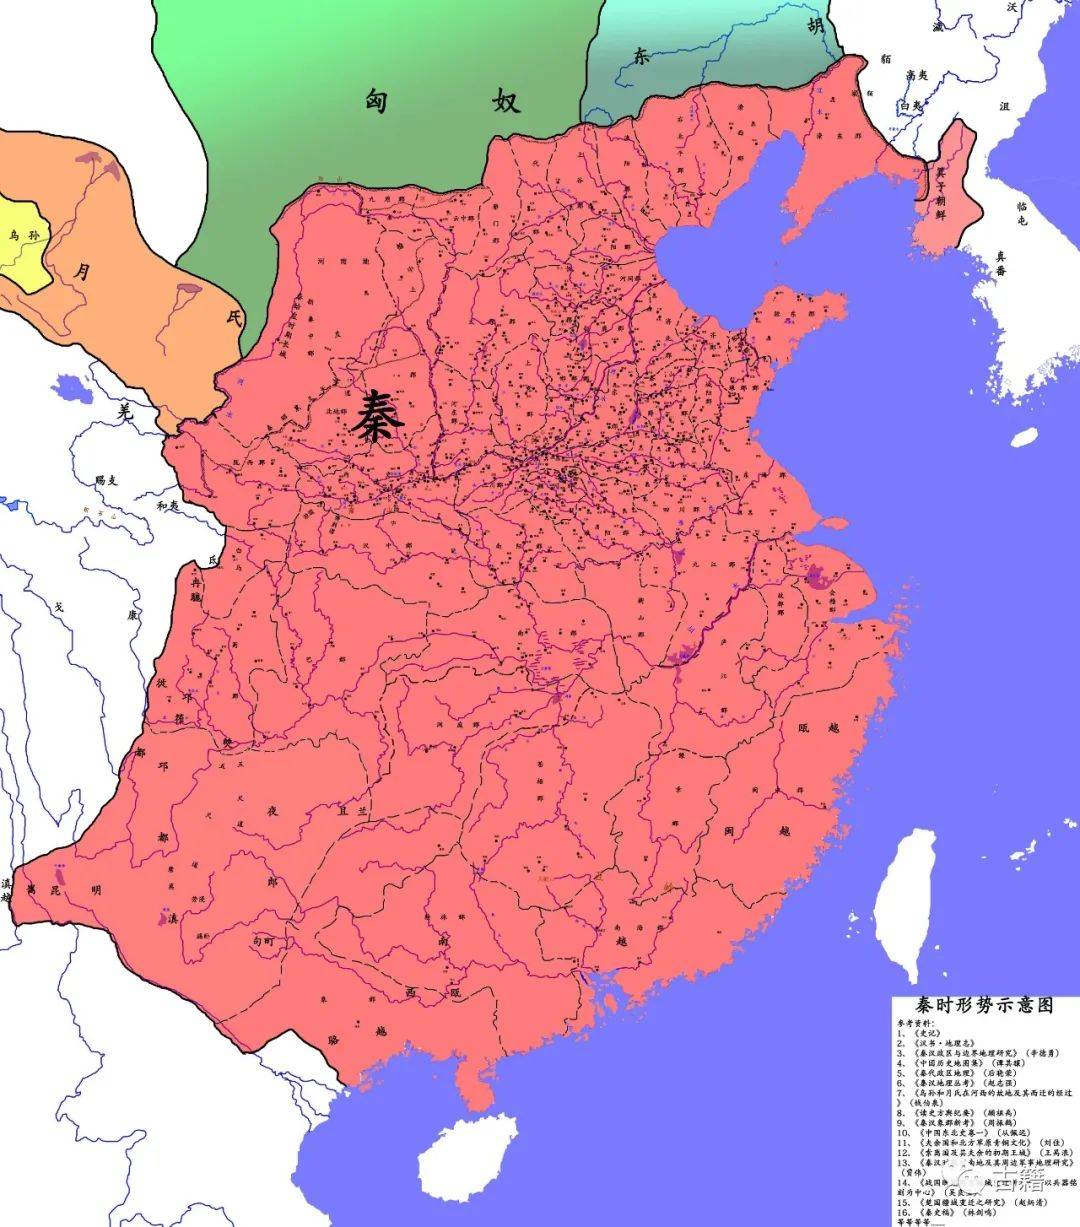 葛剑雄:为什么秦朝框住了中国的版图?